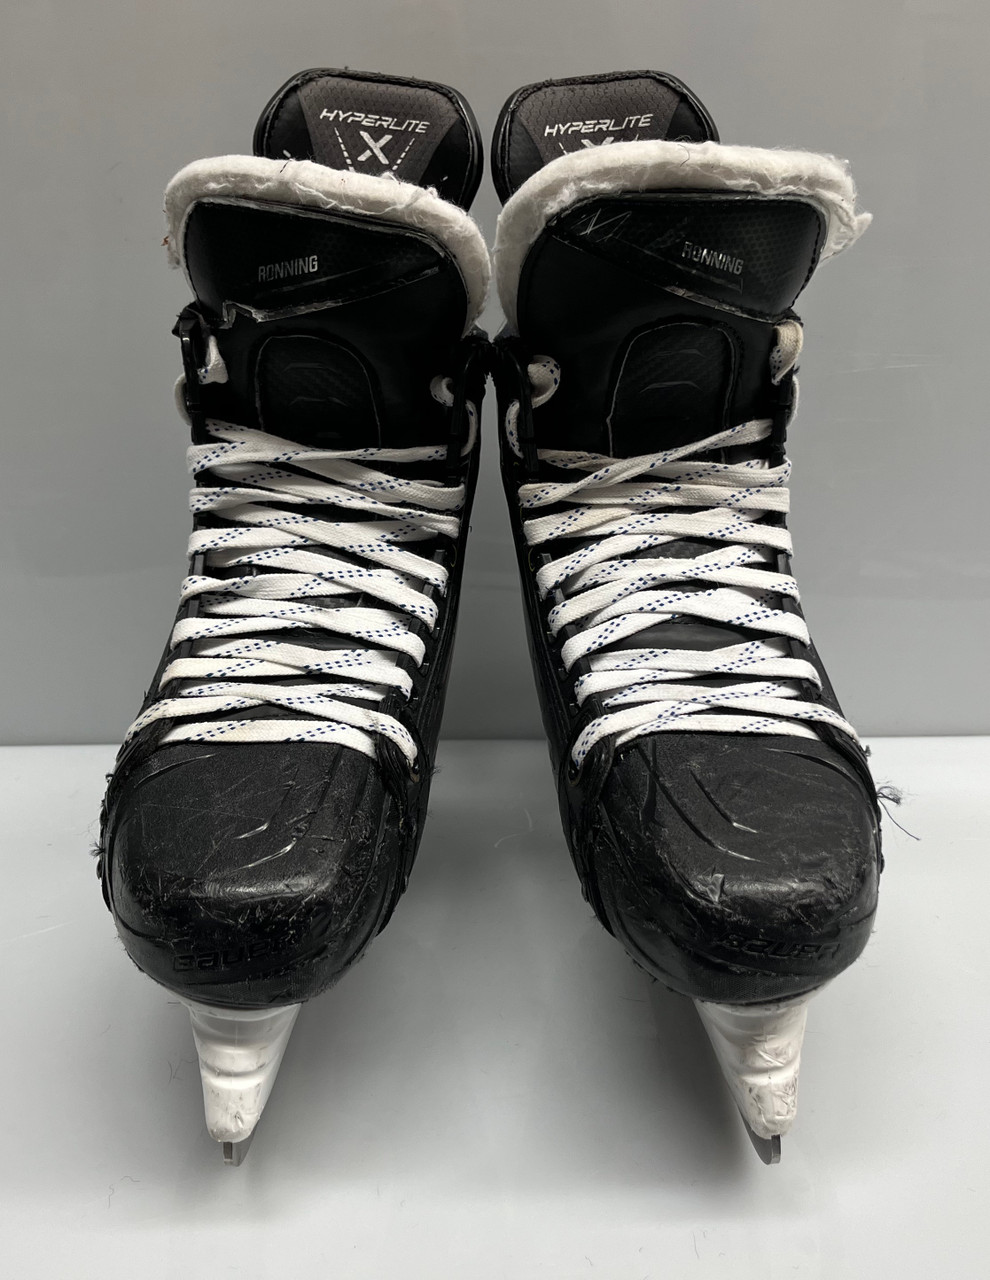 BAUER HYPERLITE CUSTOM PRO STOCK ICE HOCKEY SKATES 7 3/4 D USED - DK's  Hockey Shop